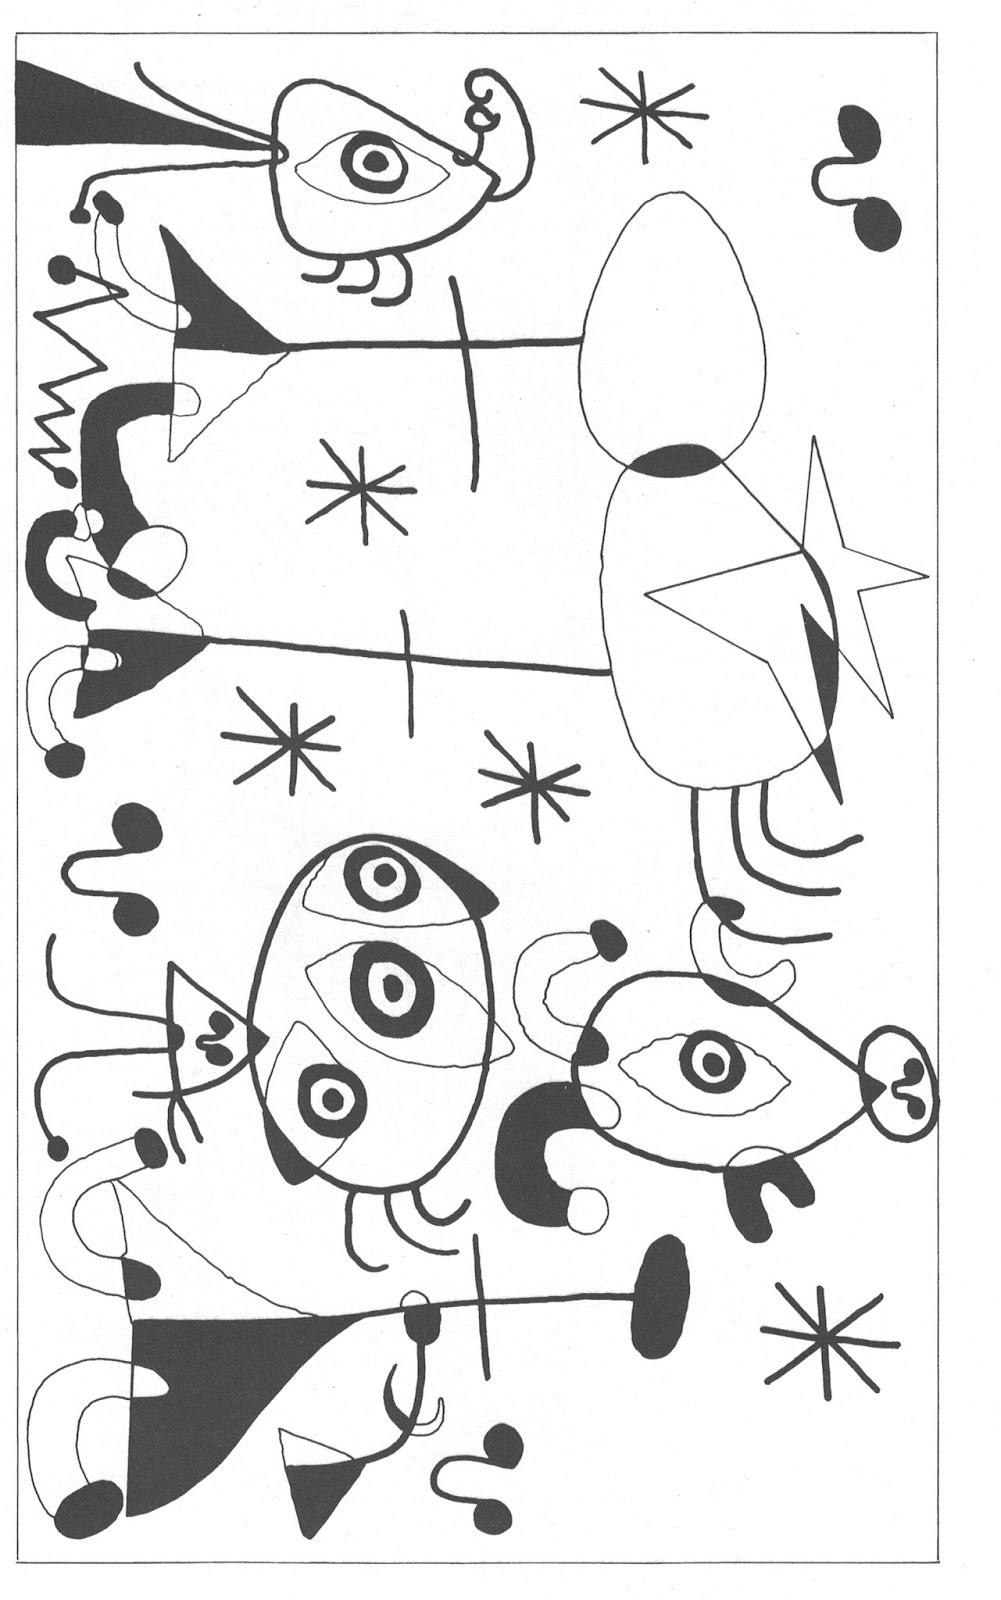 Le opere e i dipinti pi¹ belli dell artista Joan Mir² da stampare e colorare